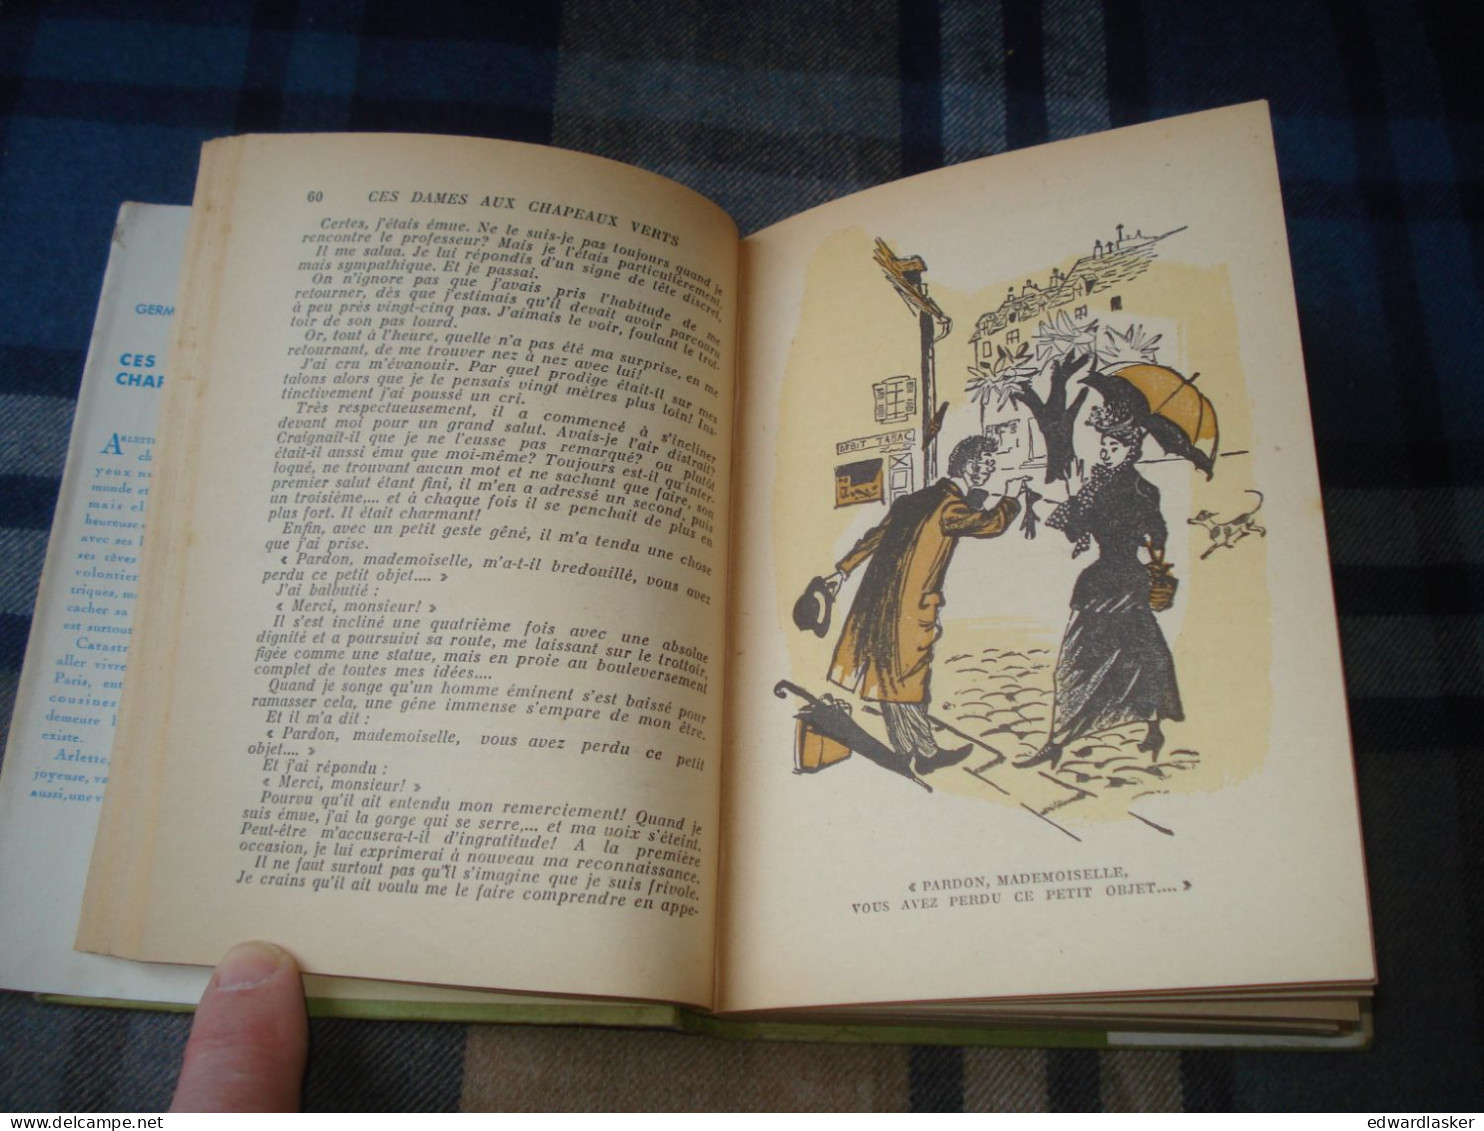 BIBLIOTHEQUE VERTE : Ces Dames Aux Chapeaux Verts /Germaine Acremant - Jaquette 1952 - Jacques Demachy - Bibliothèque Verte